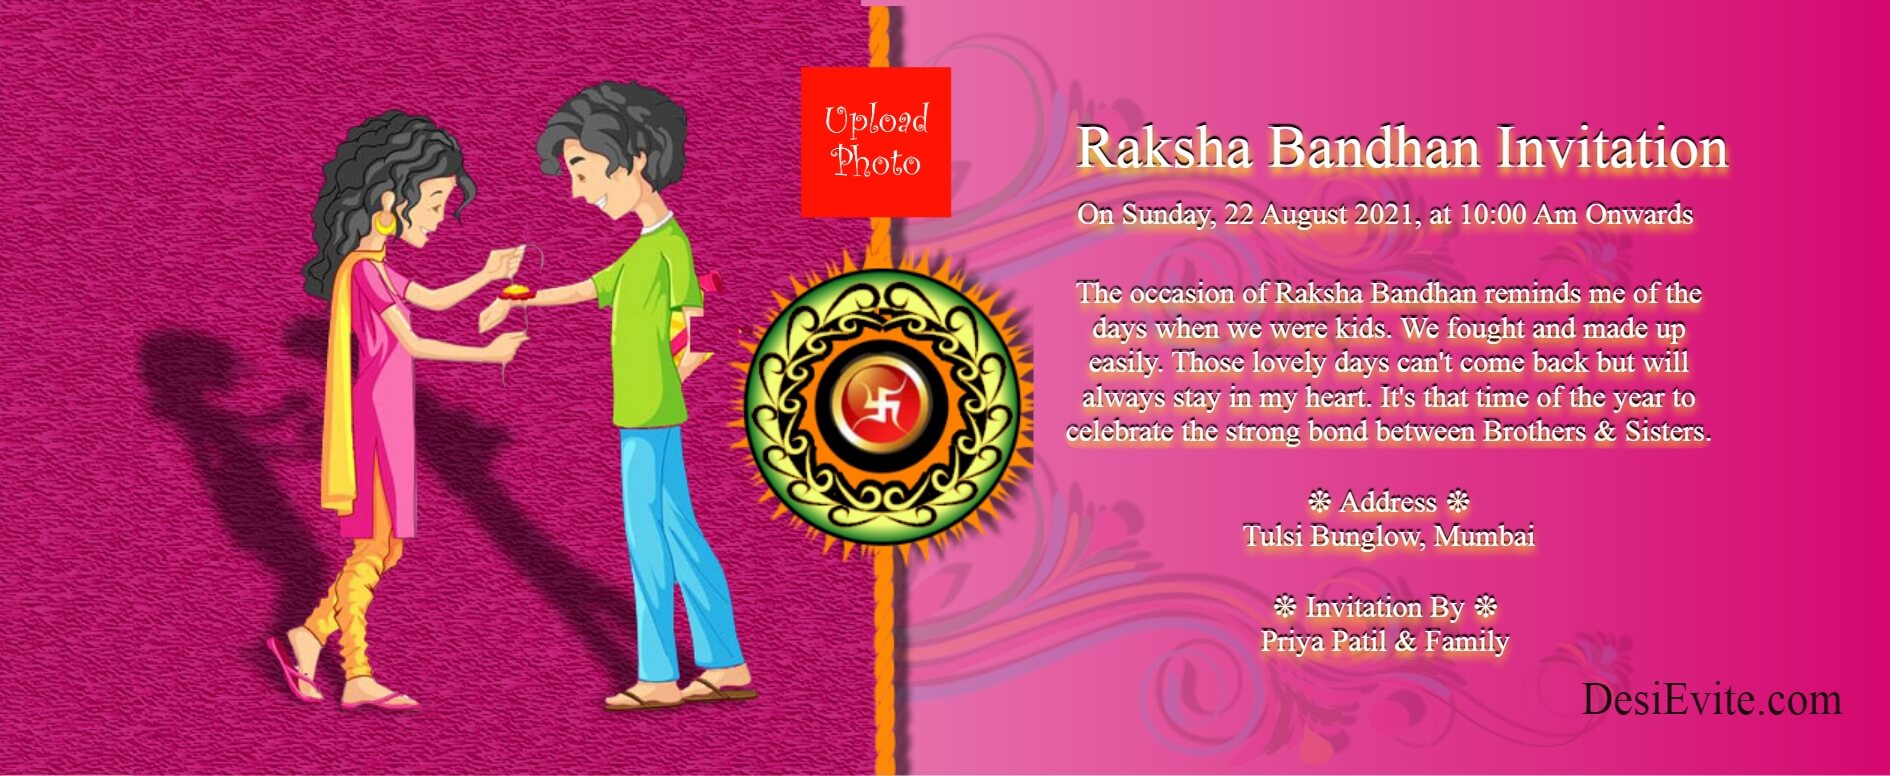 Raksha Bandhan Invitation 